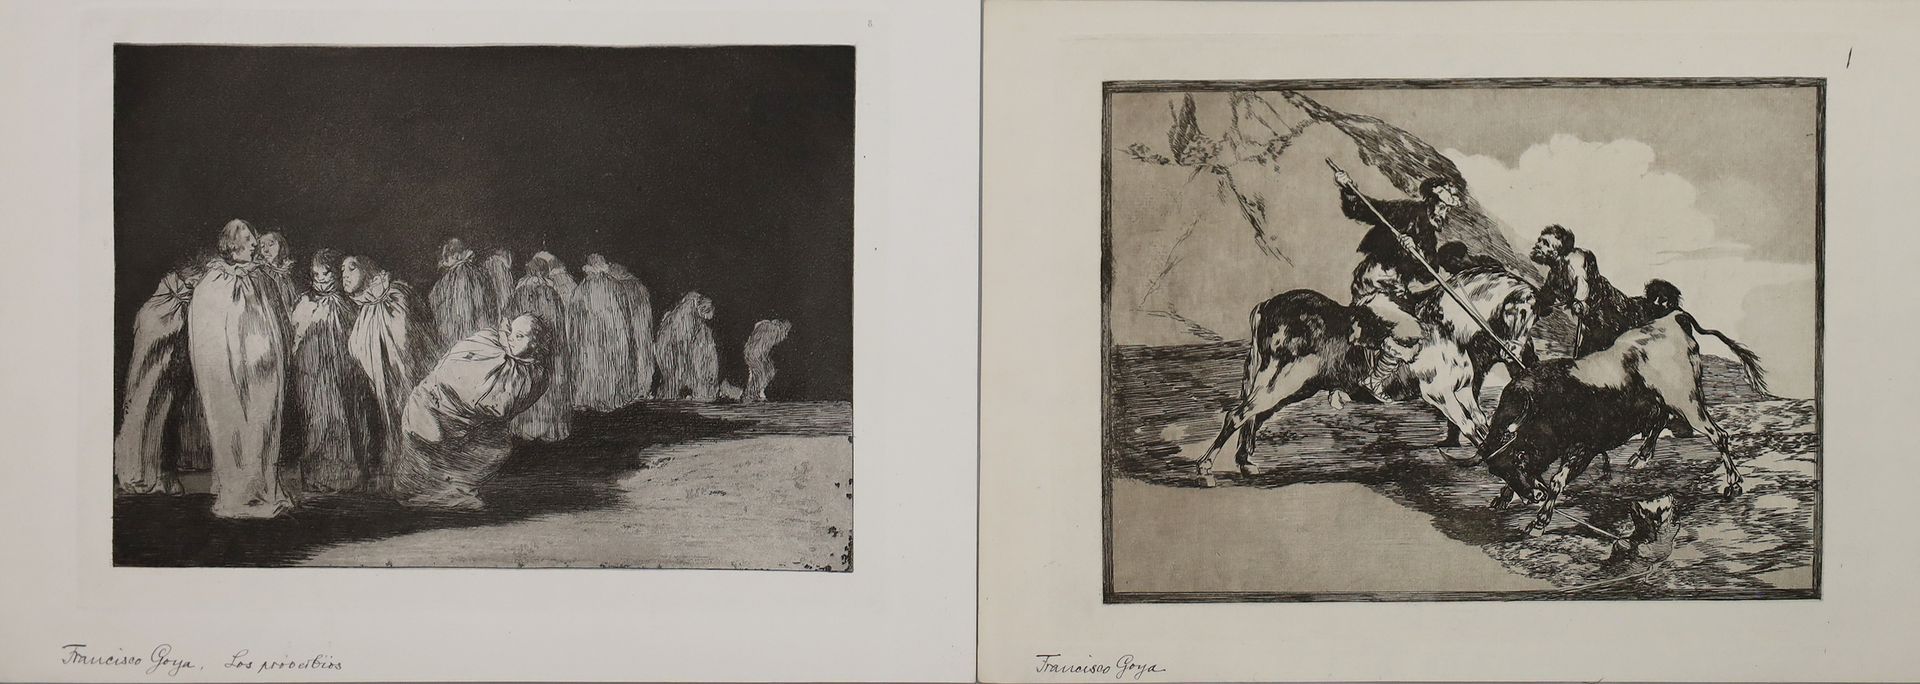 de Goya y Lucientes, Francisco José (1746 - 1828), nach - Image 3 of 3